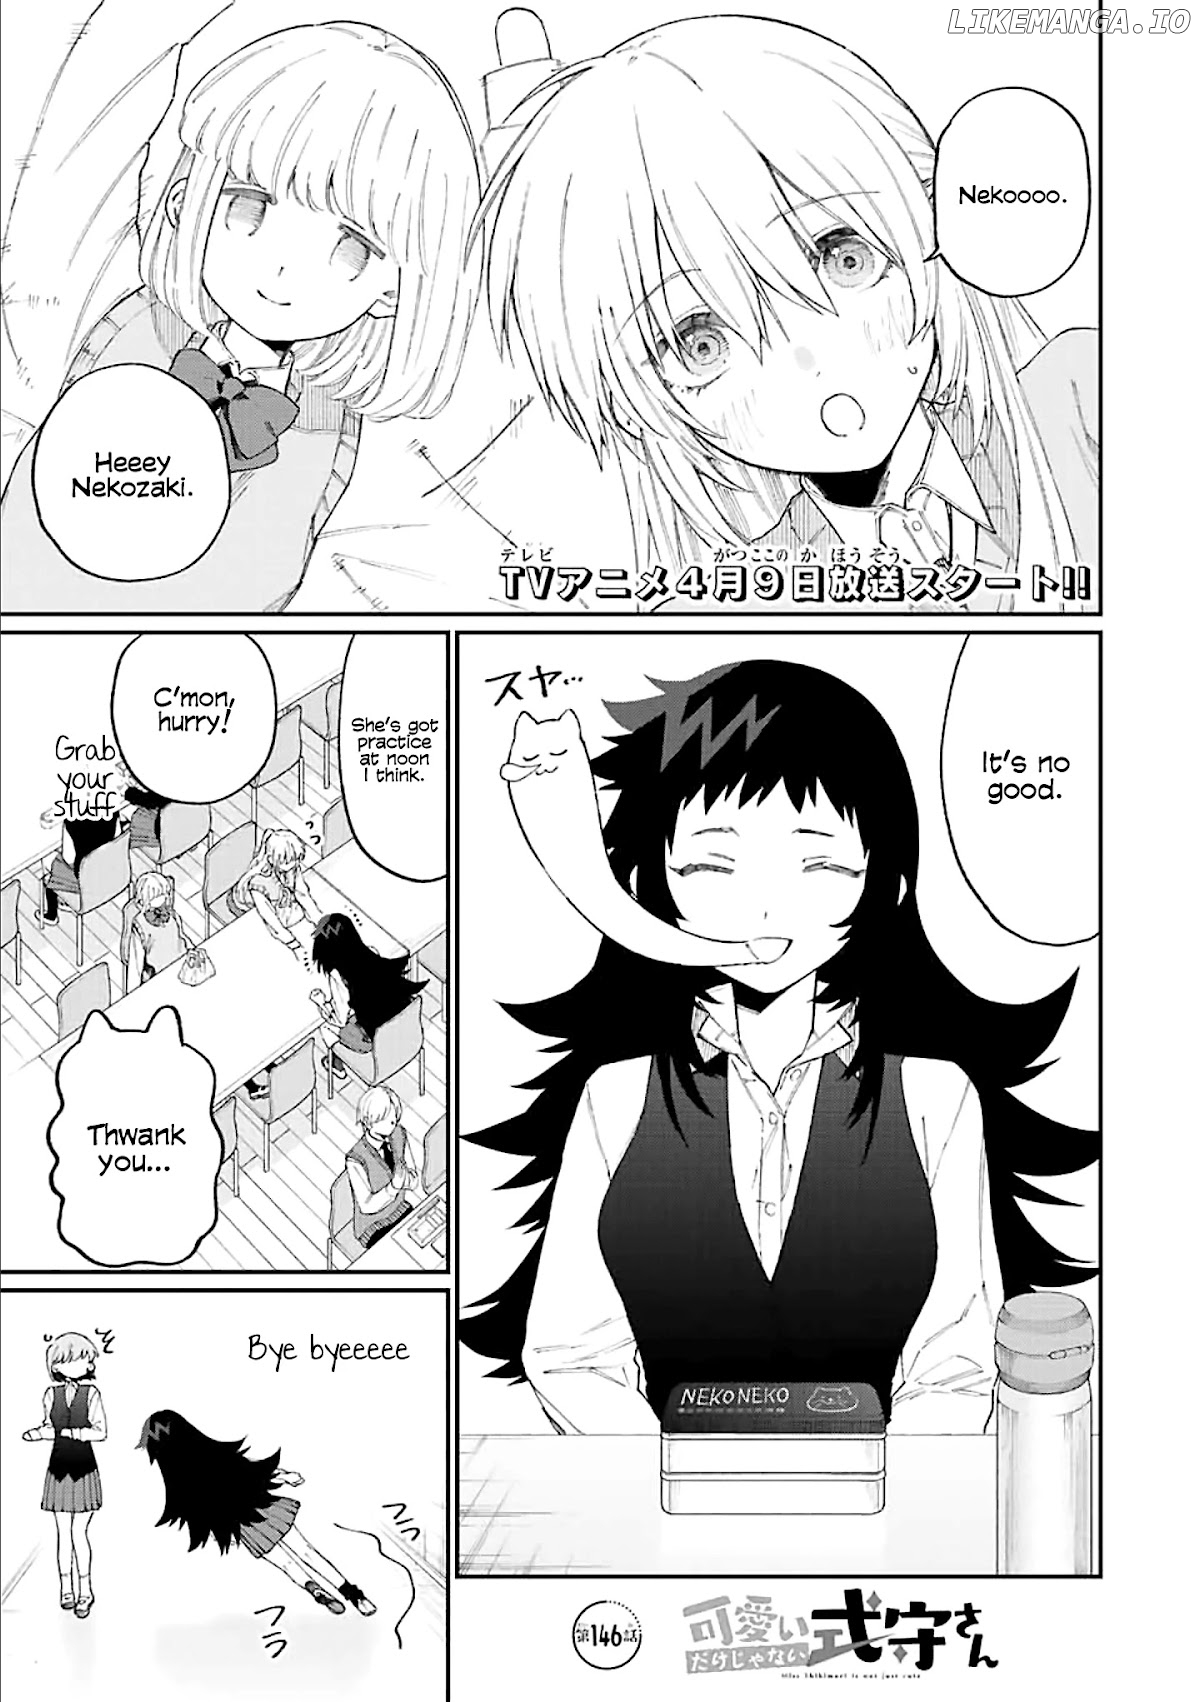 Shikimori's Not Just A Cutie chapter 146 - page 1